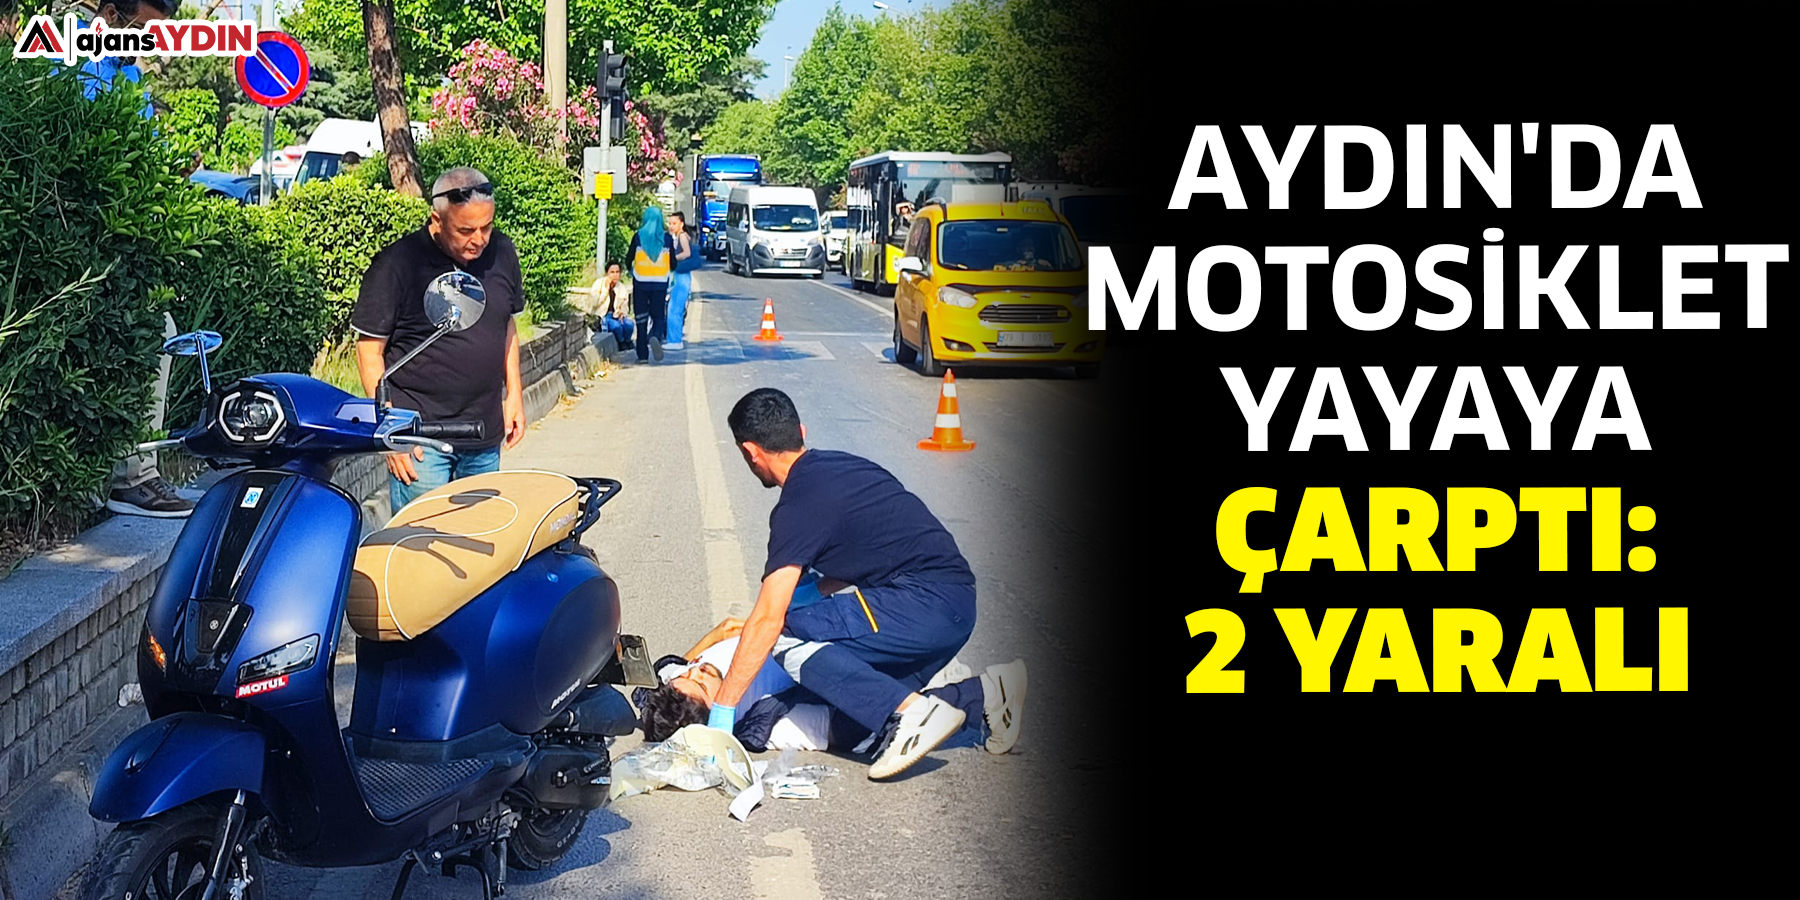 Aydın'da motosiklet yayaya çarptı: 2 yaralı